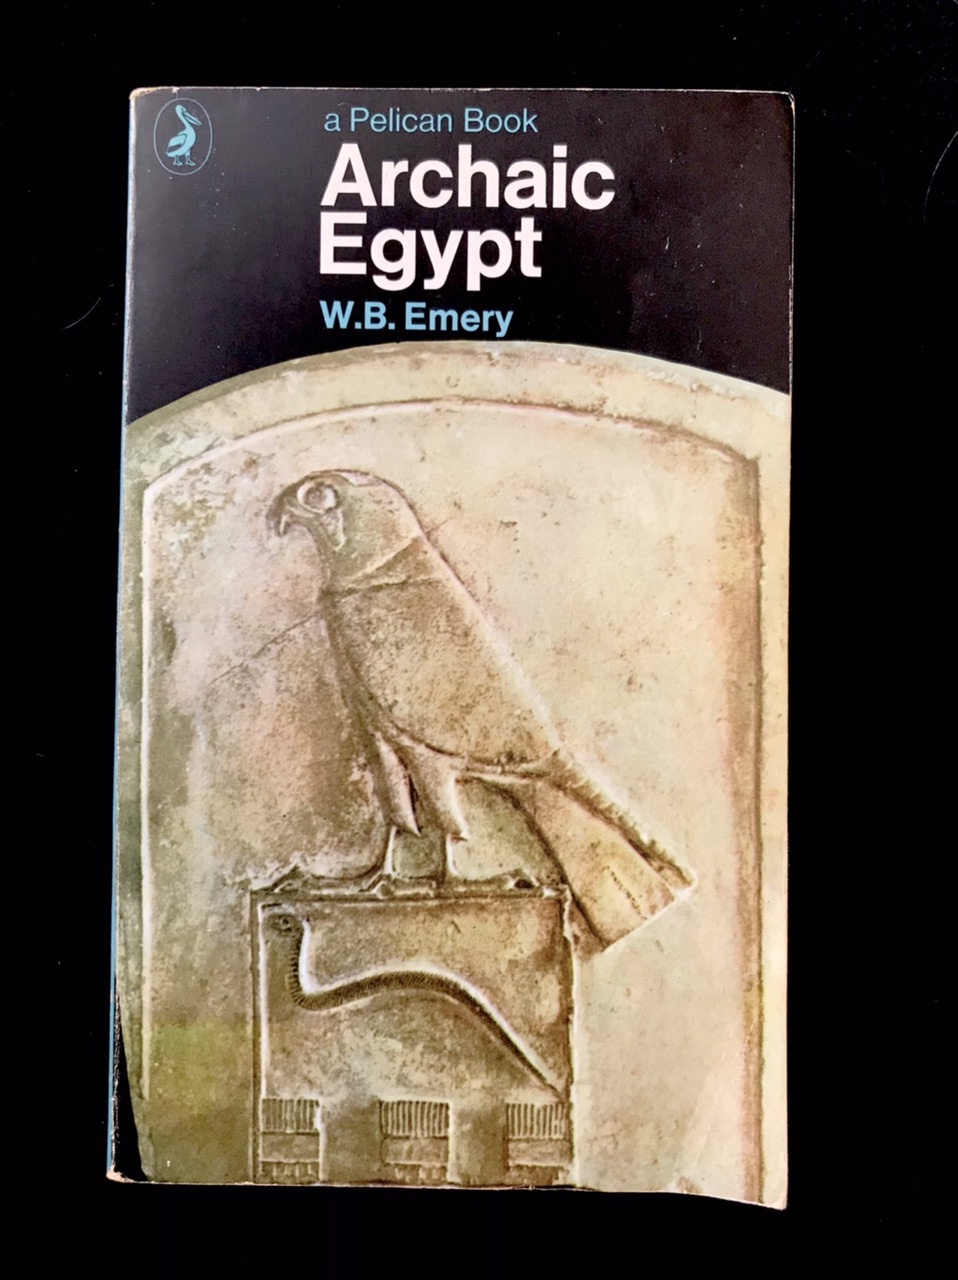 Archaic Egypt by W. B. Emery